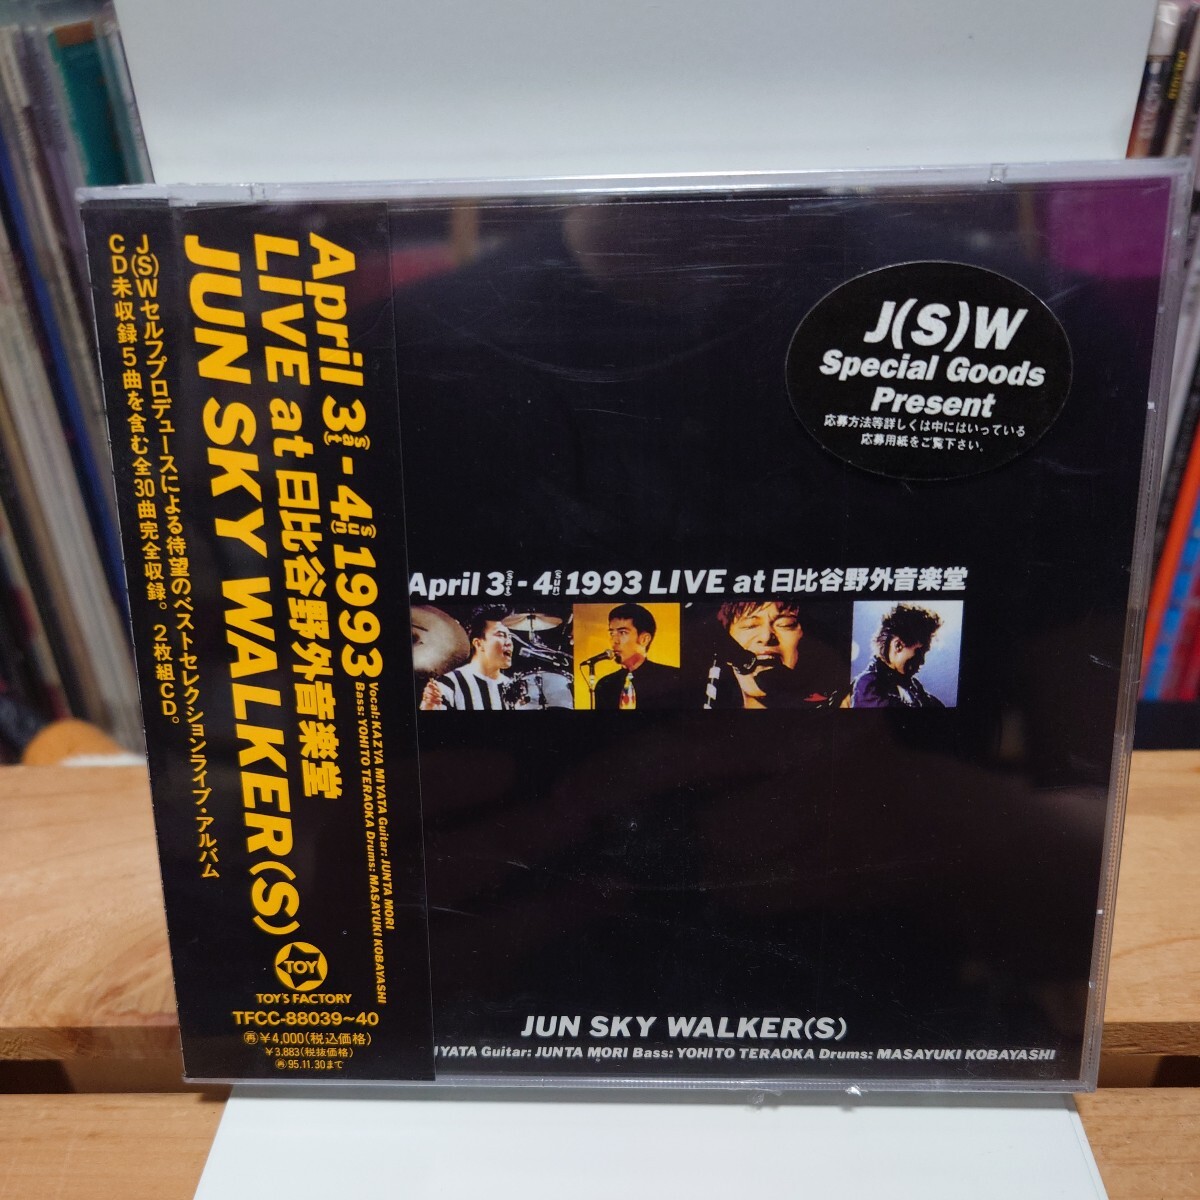 【未開封新品】JUN SKY WALKER(S)『April 3 - 4 1993 LIVE at 日比谷野外音楽堂』2枚組全30曲 ベストセレクションライブ・アルバム_画像1